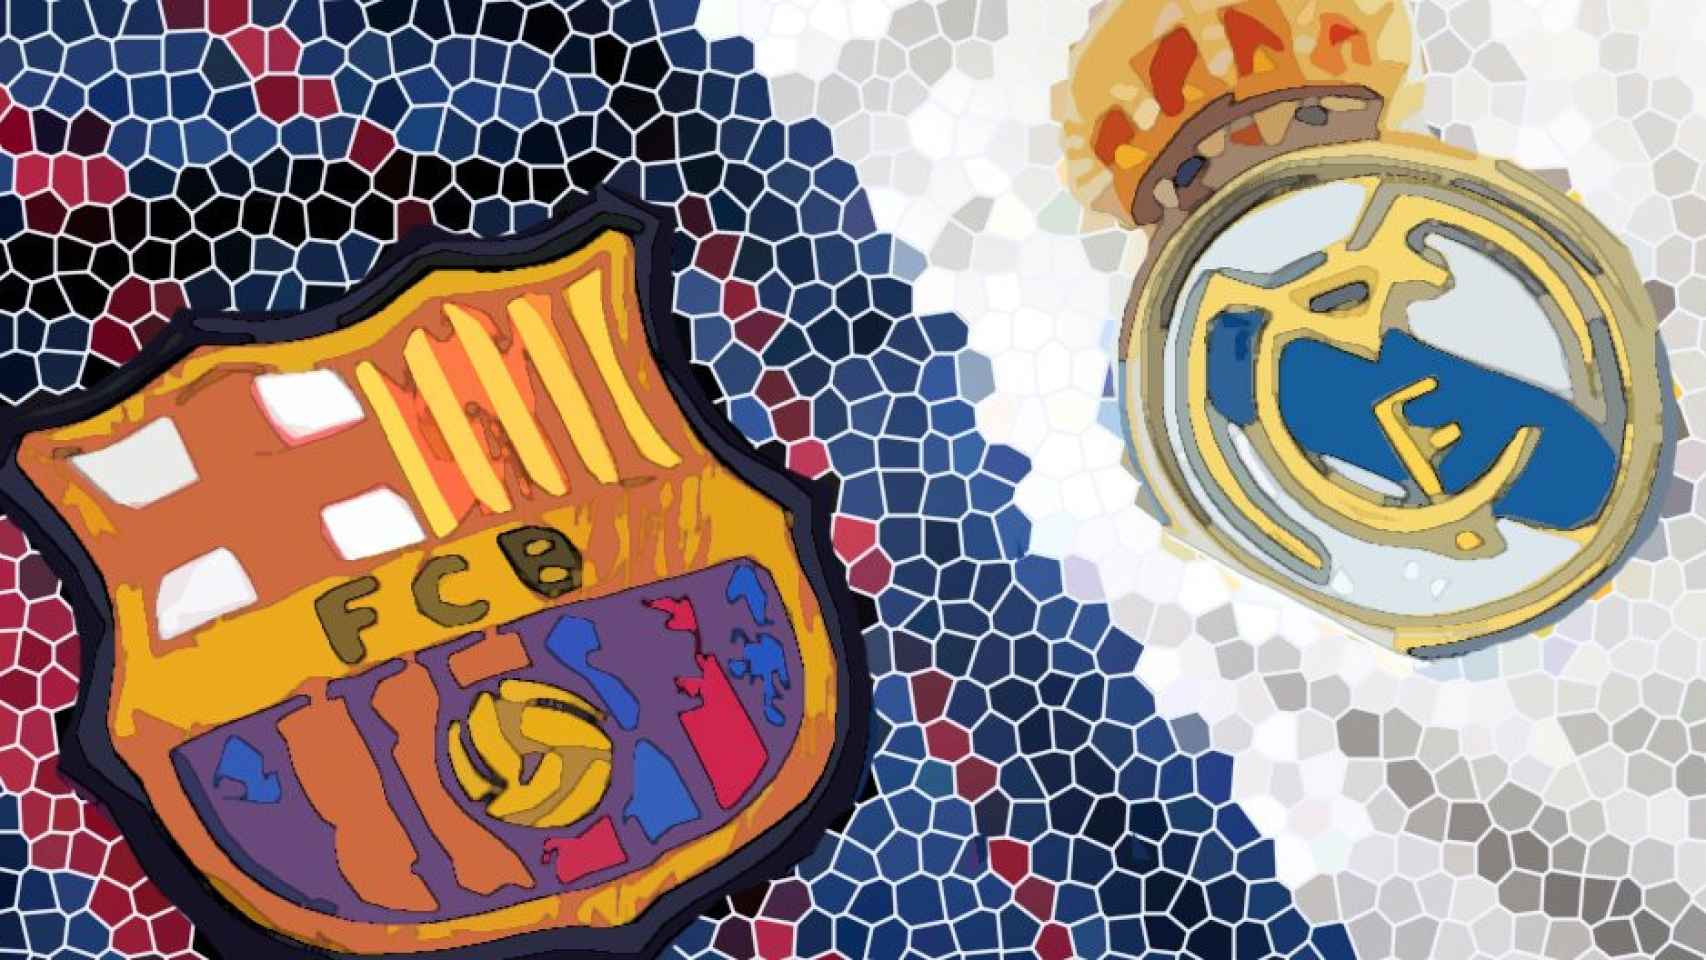 Los escudos de Barça y Real Madrid, los equipos que juegan el clásico, convertidos en arte / CULEMANÍA